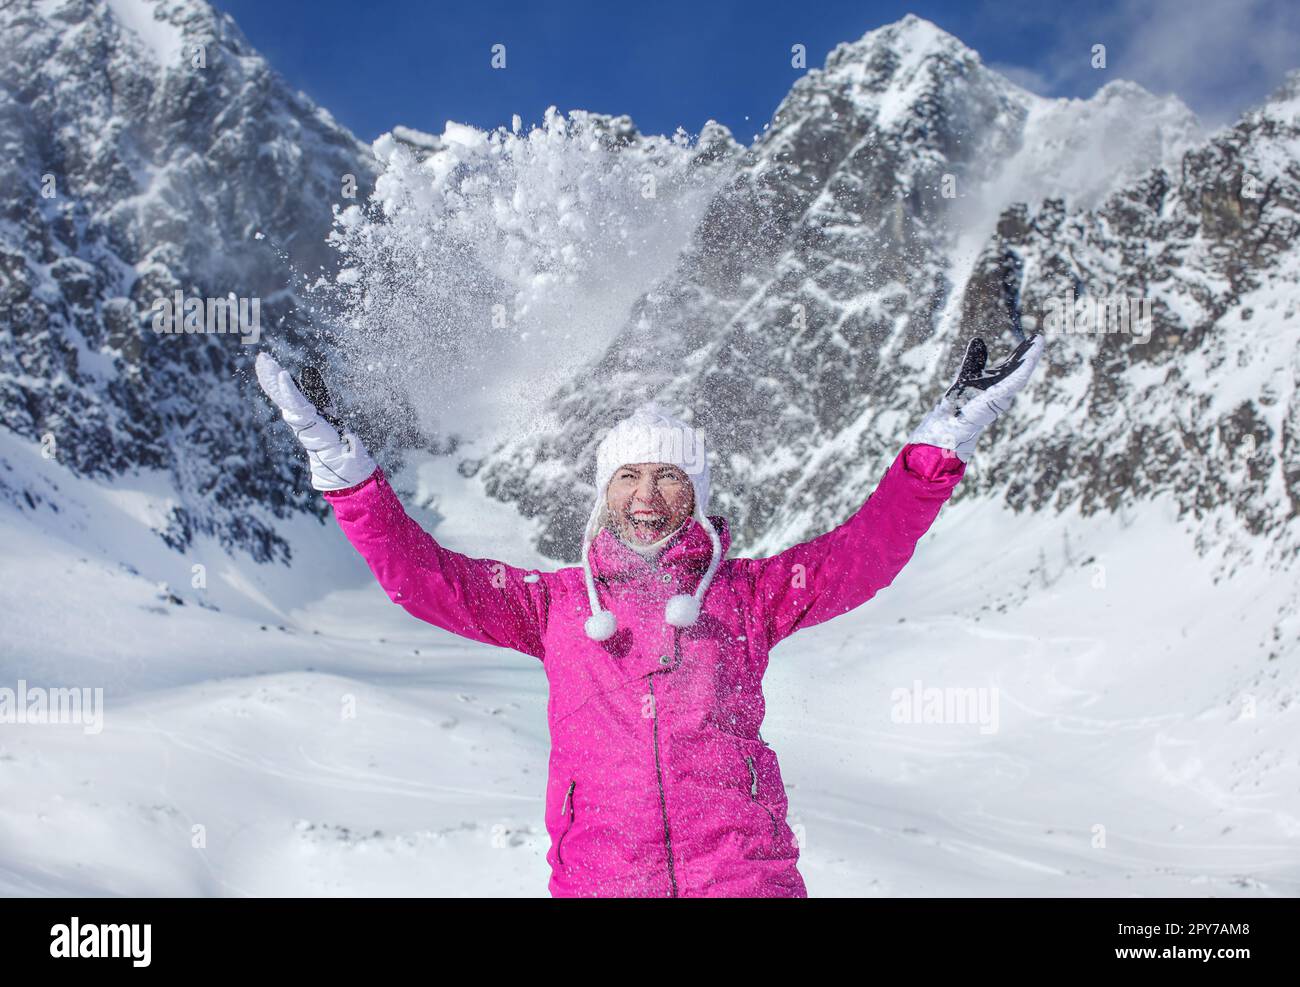 Junge Frau in pinkfarbener Skijacke, Handschuhen und Wintermütze, lächelt, wirft Schnee in die Luft, Sonne scheint auf den Berg hinter ihr. Skigebiet Skalnate Pleso, Slowakei. Stockfoto